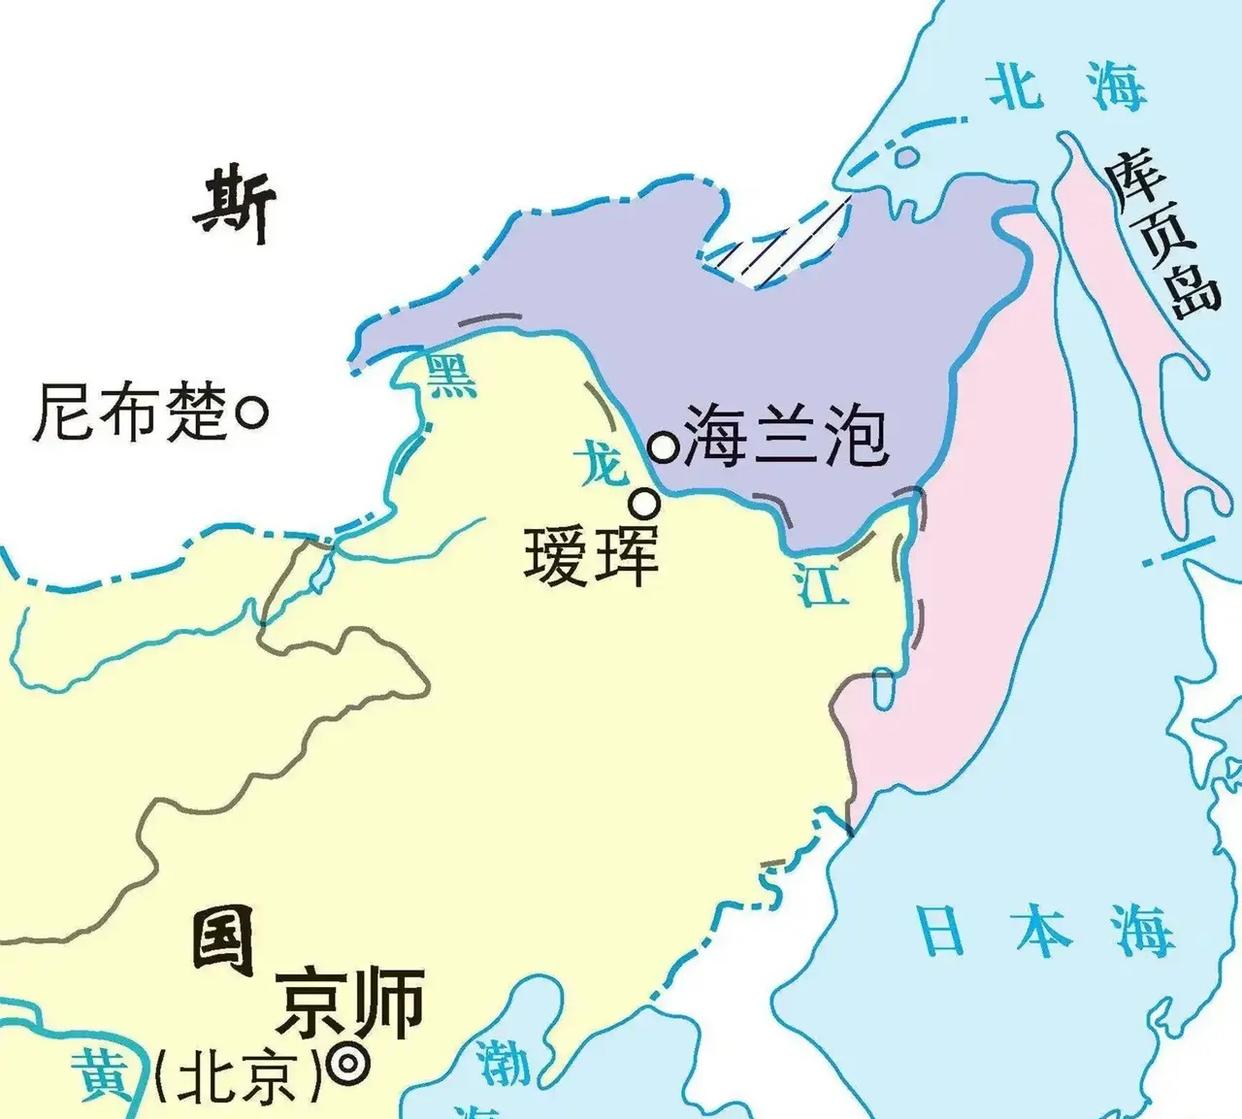 【史图馆】中国历代疆域变化第十二版及新的中国历史地图系列 - 知乎